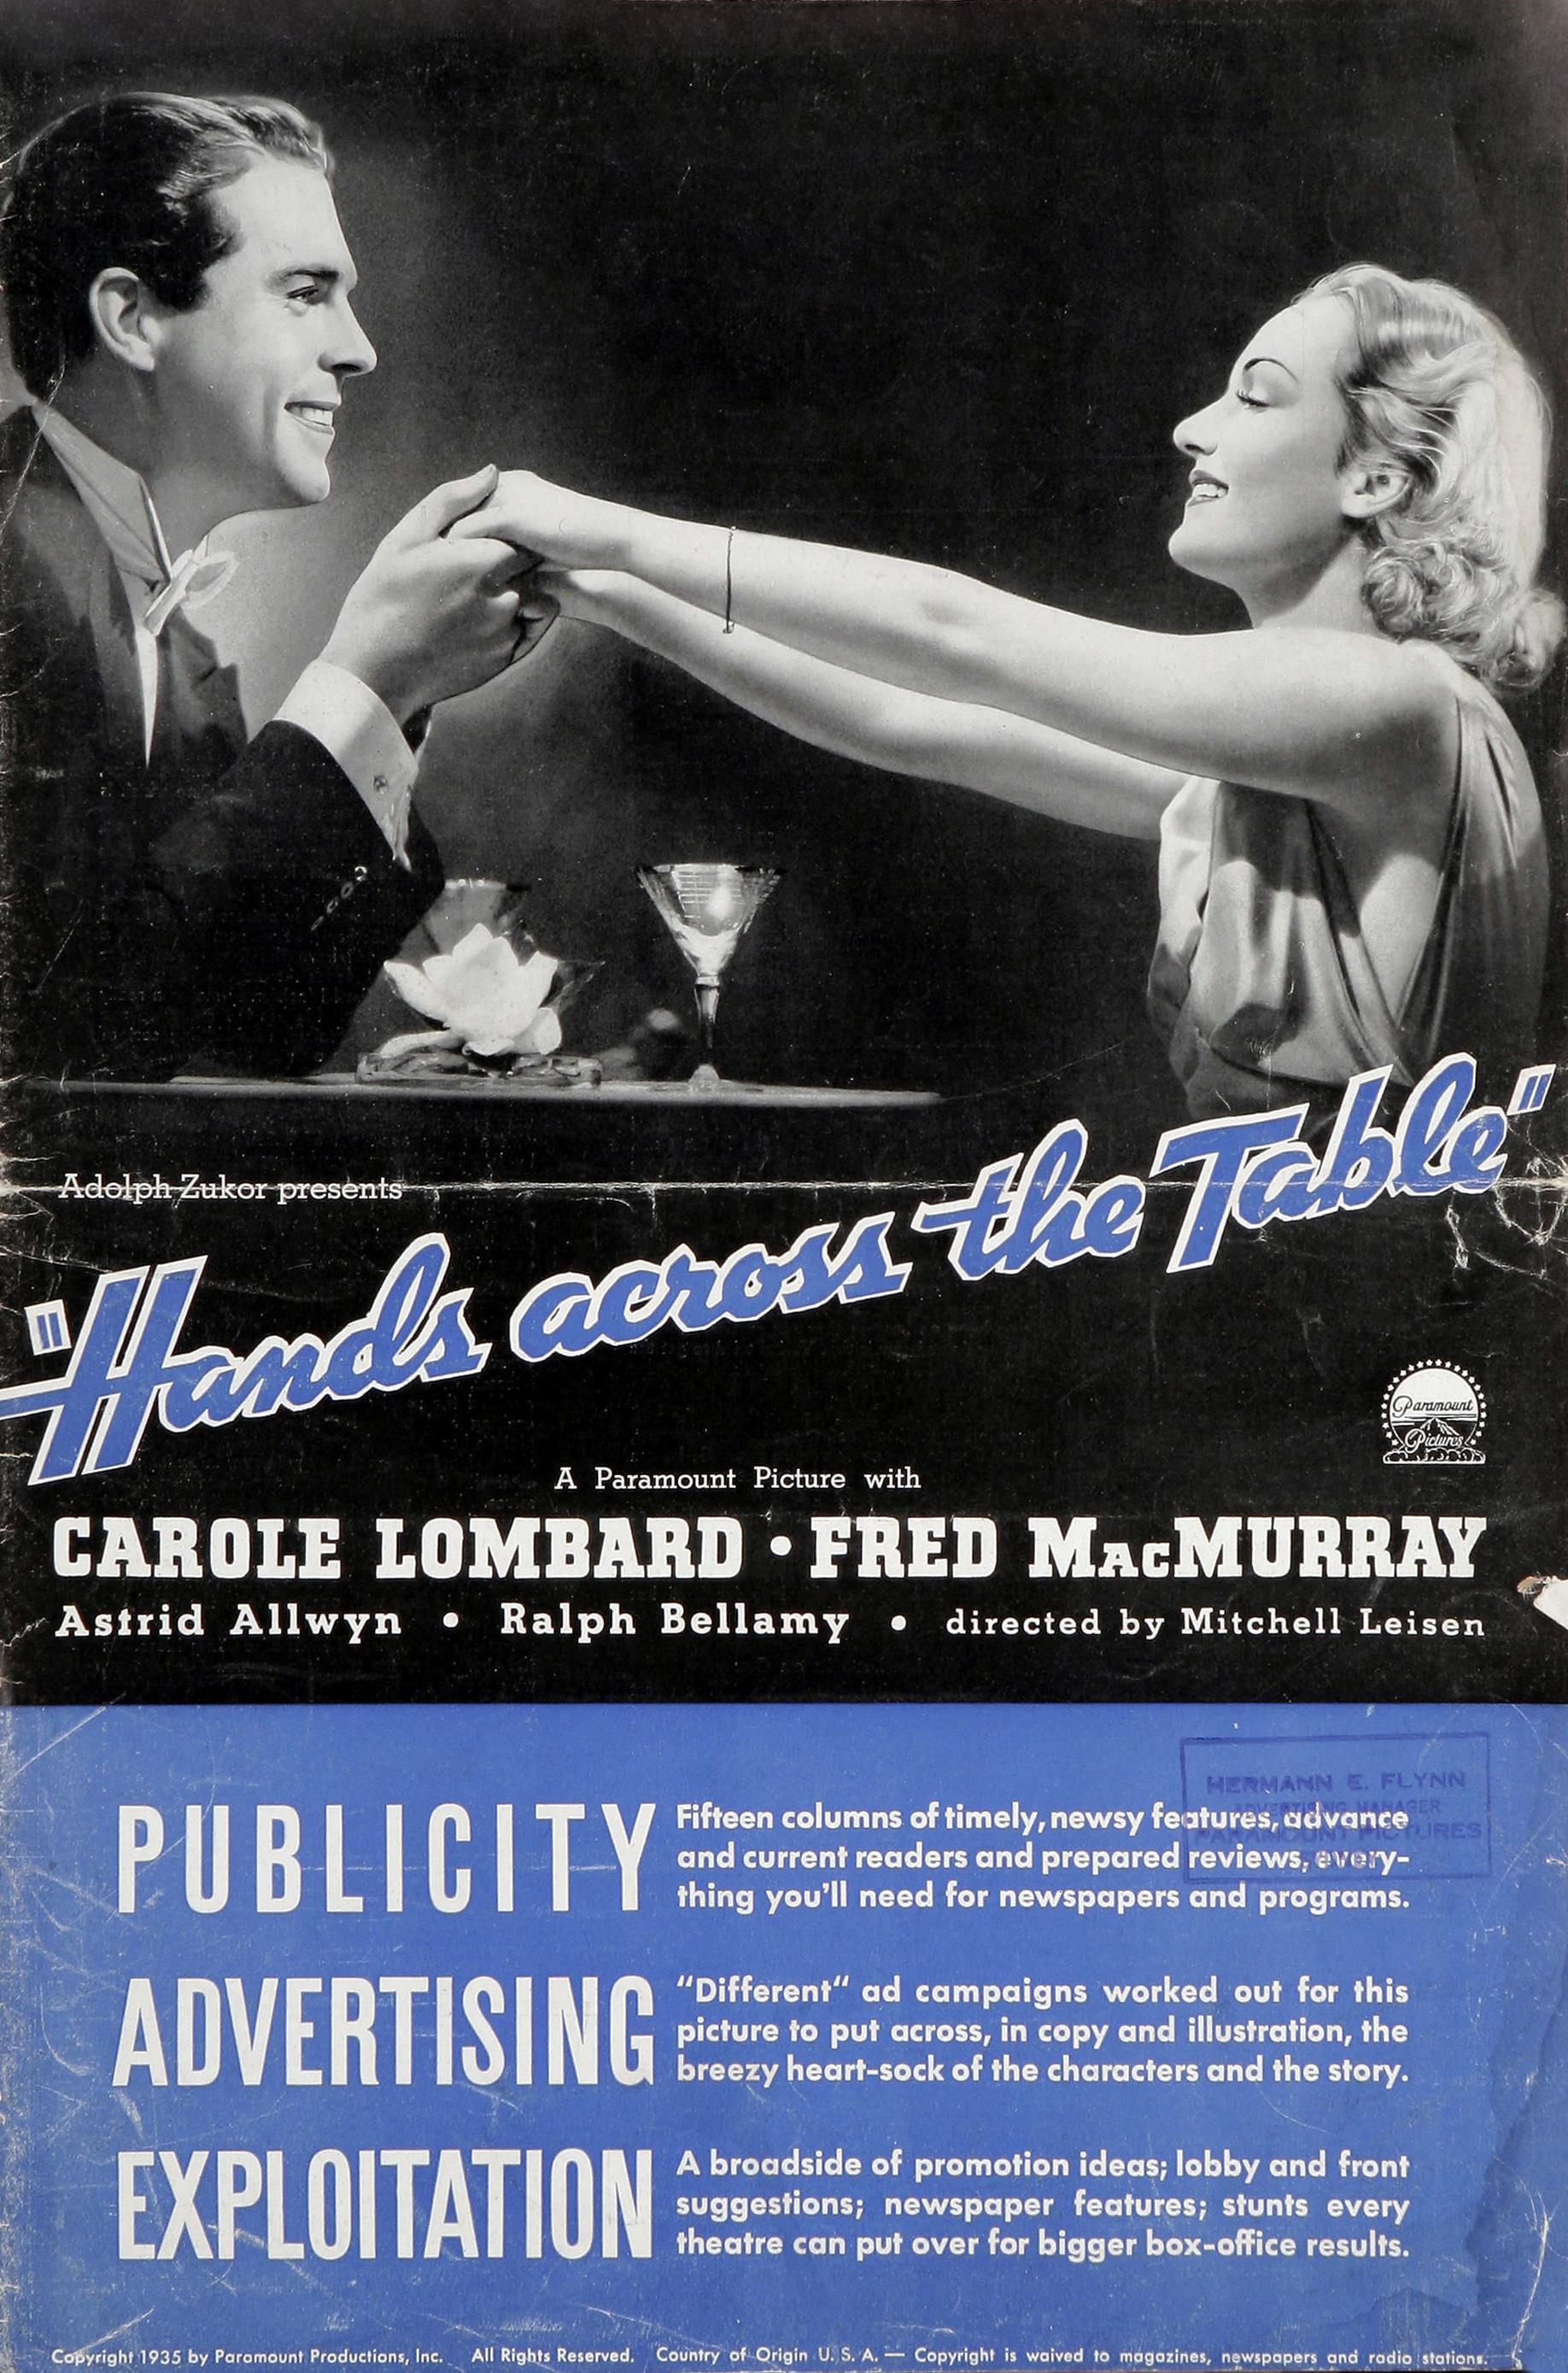 Постер фильма Hands Across the Table